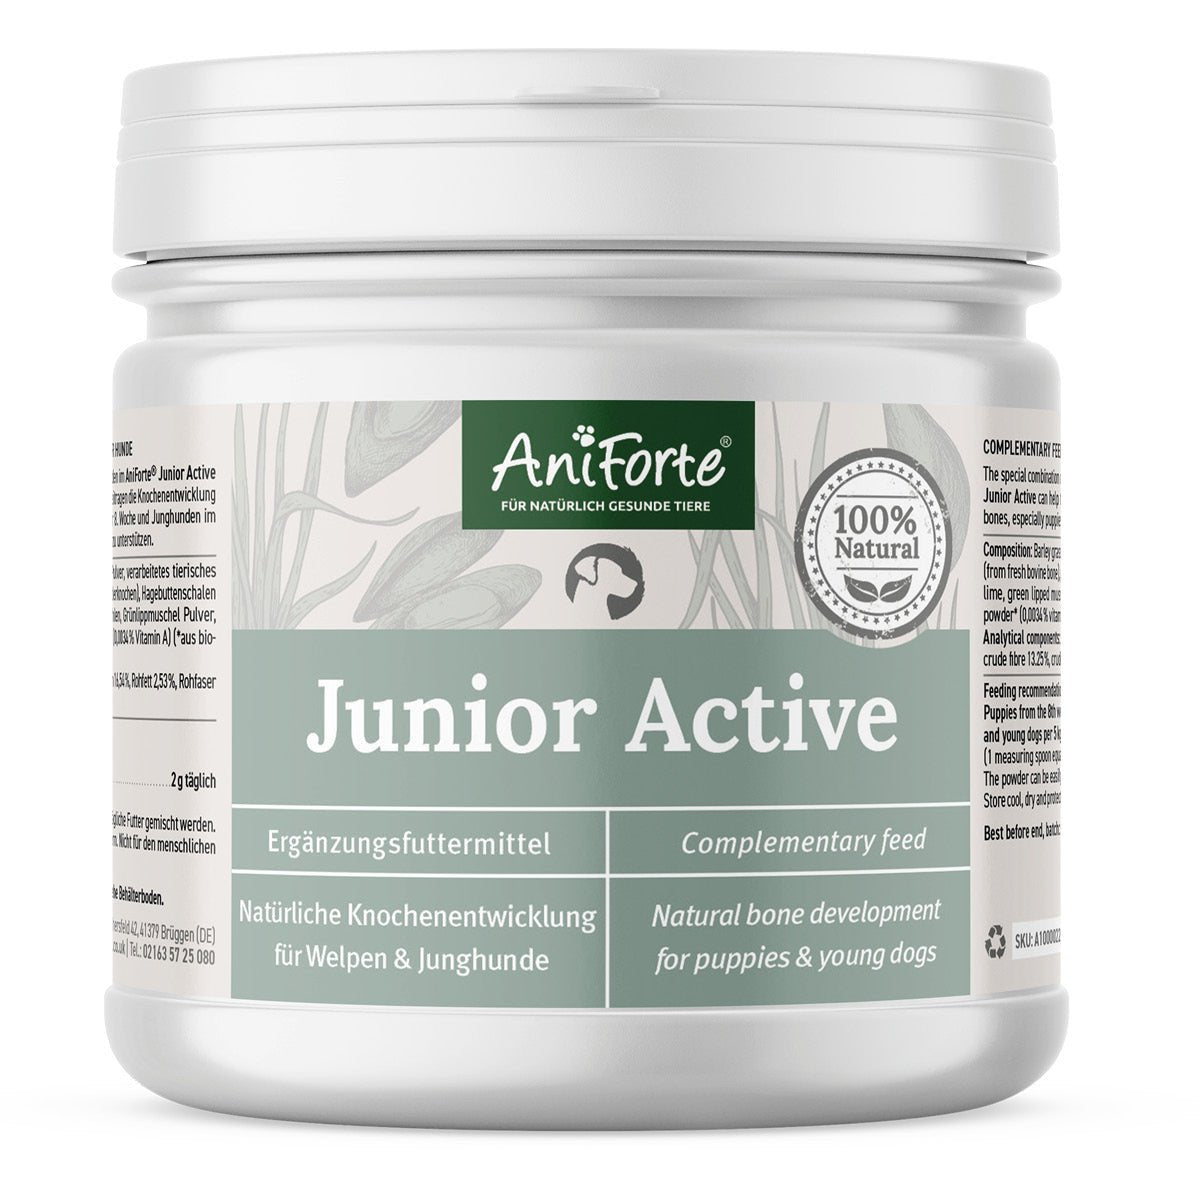 Junior Active von AniForte